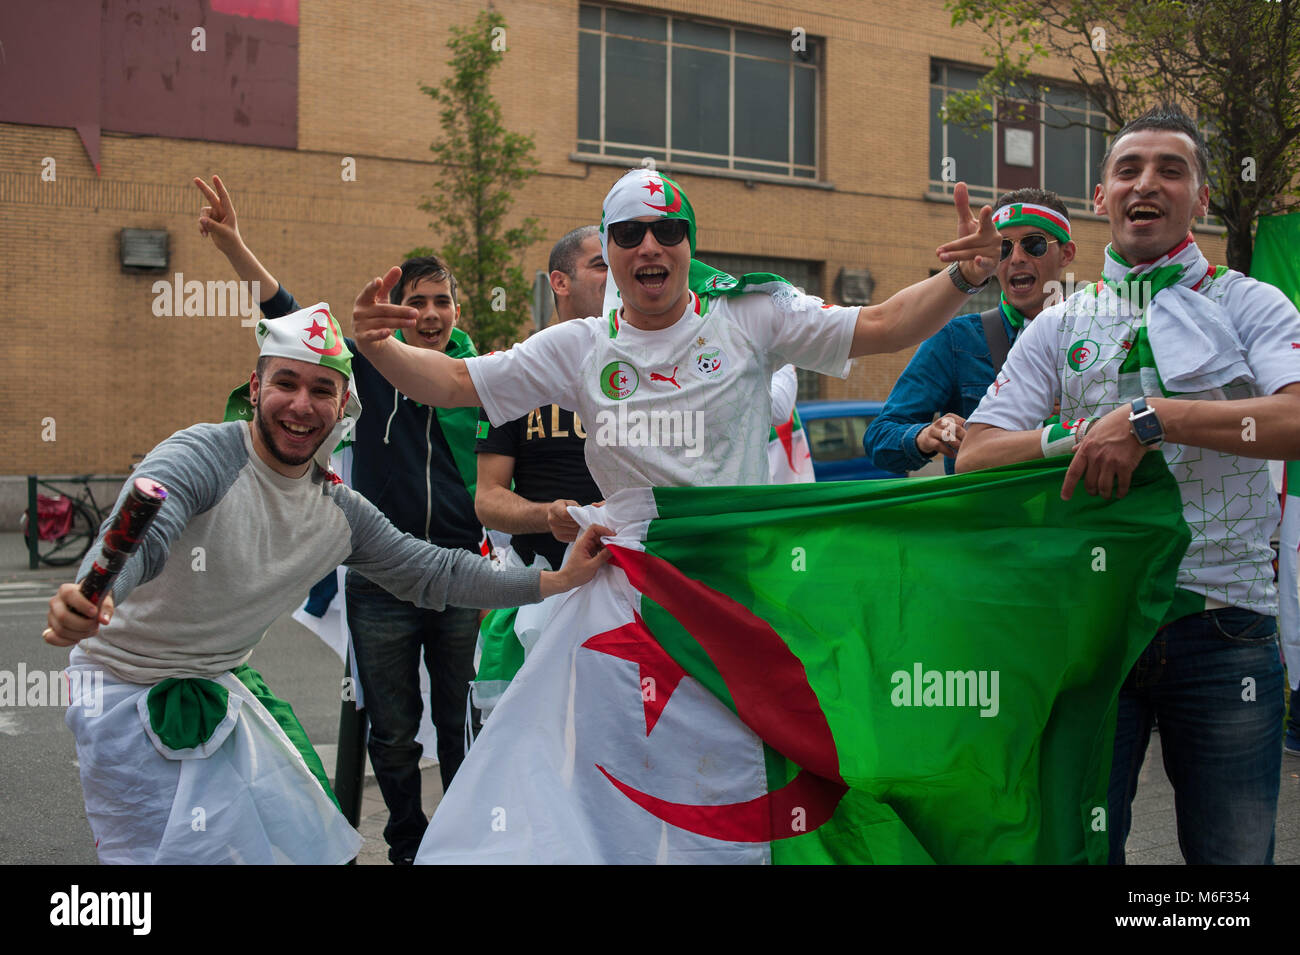 Bruxelles. Les supporters algériens célèbrent au cours du monde, Molenbeek. La Belgique. Banque D'Images